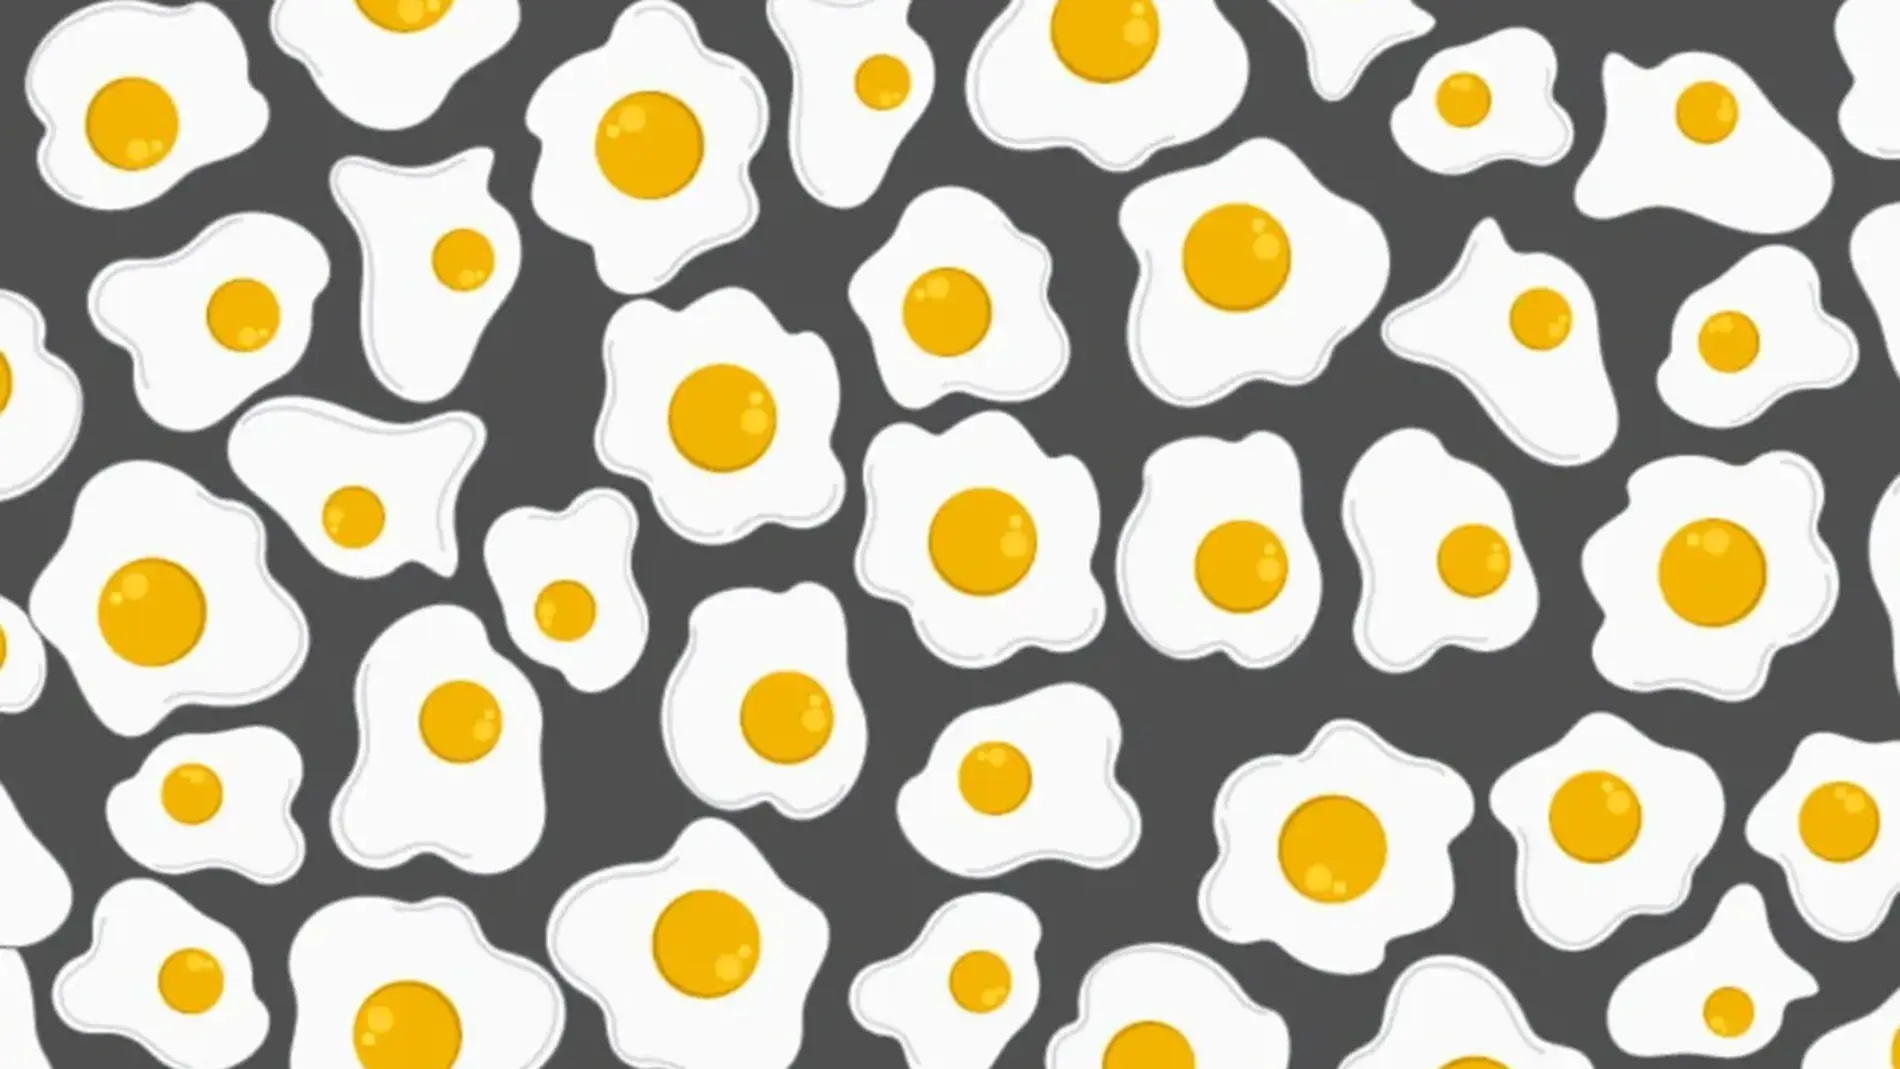 Si prestas atención a la imagen podrás encontrar los huevos que son diferentes al resto | Fuente: Noticieros Televisa